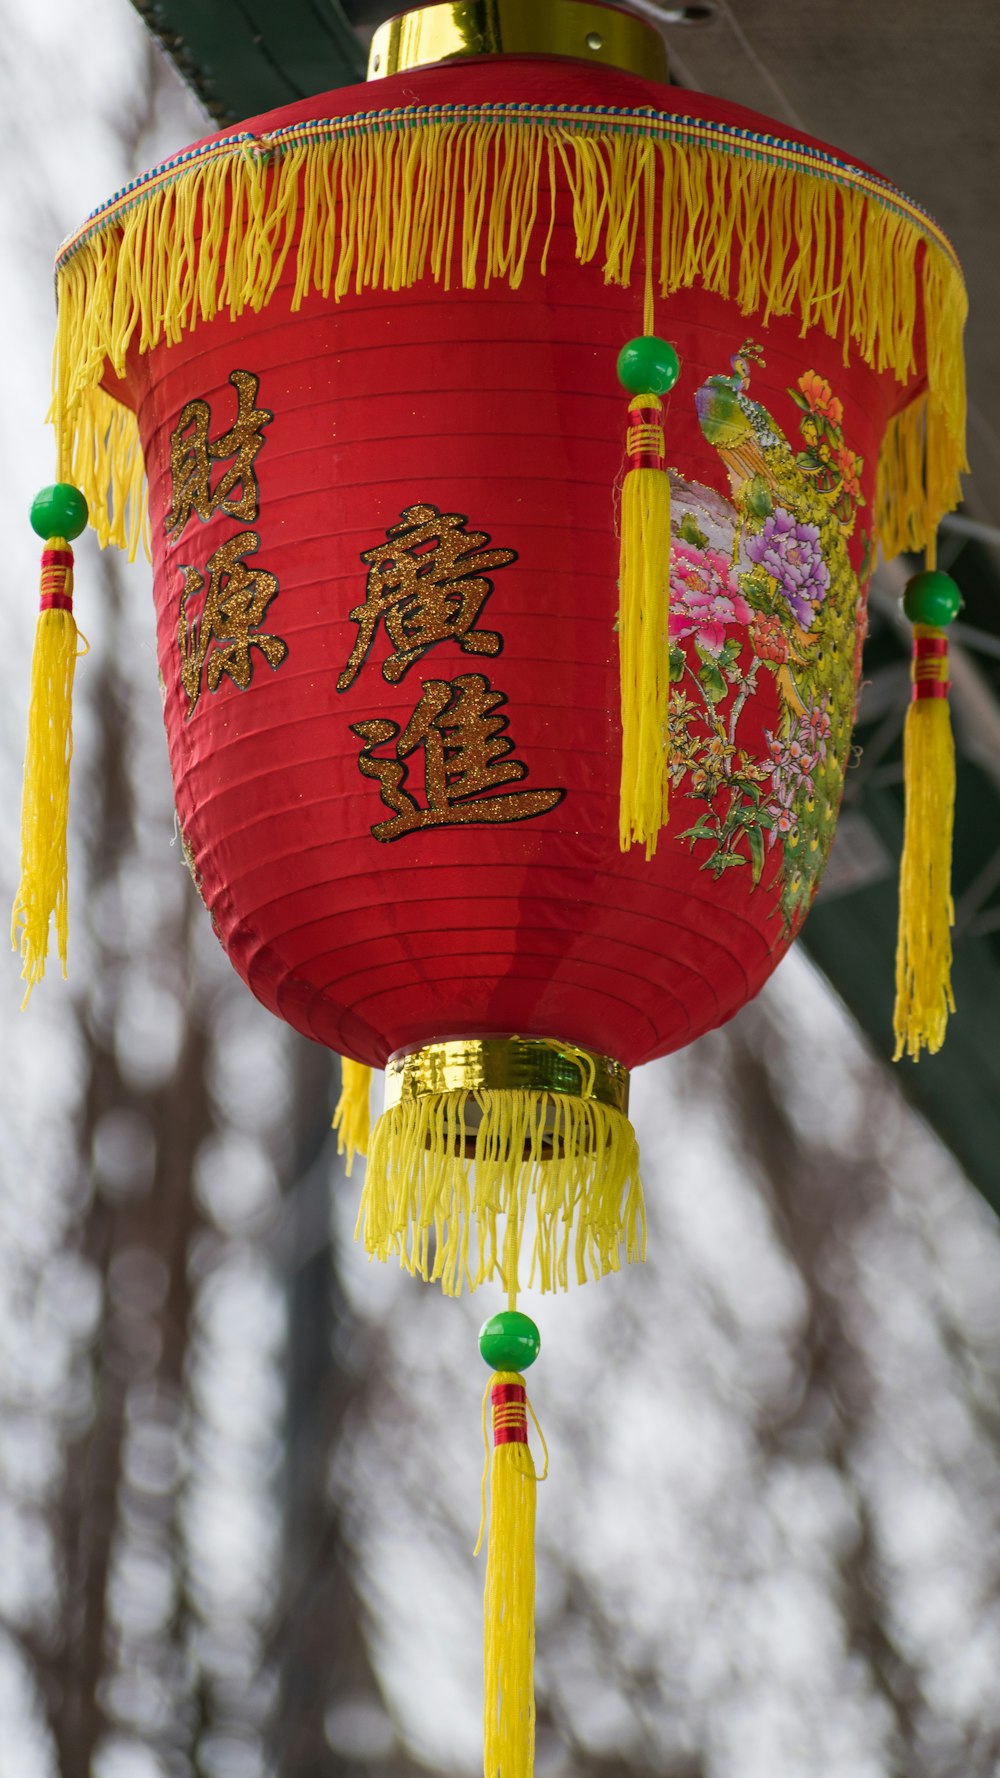 Une lanterne chinoise rouge avec des glands jaunes qui y pendent